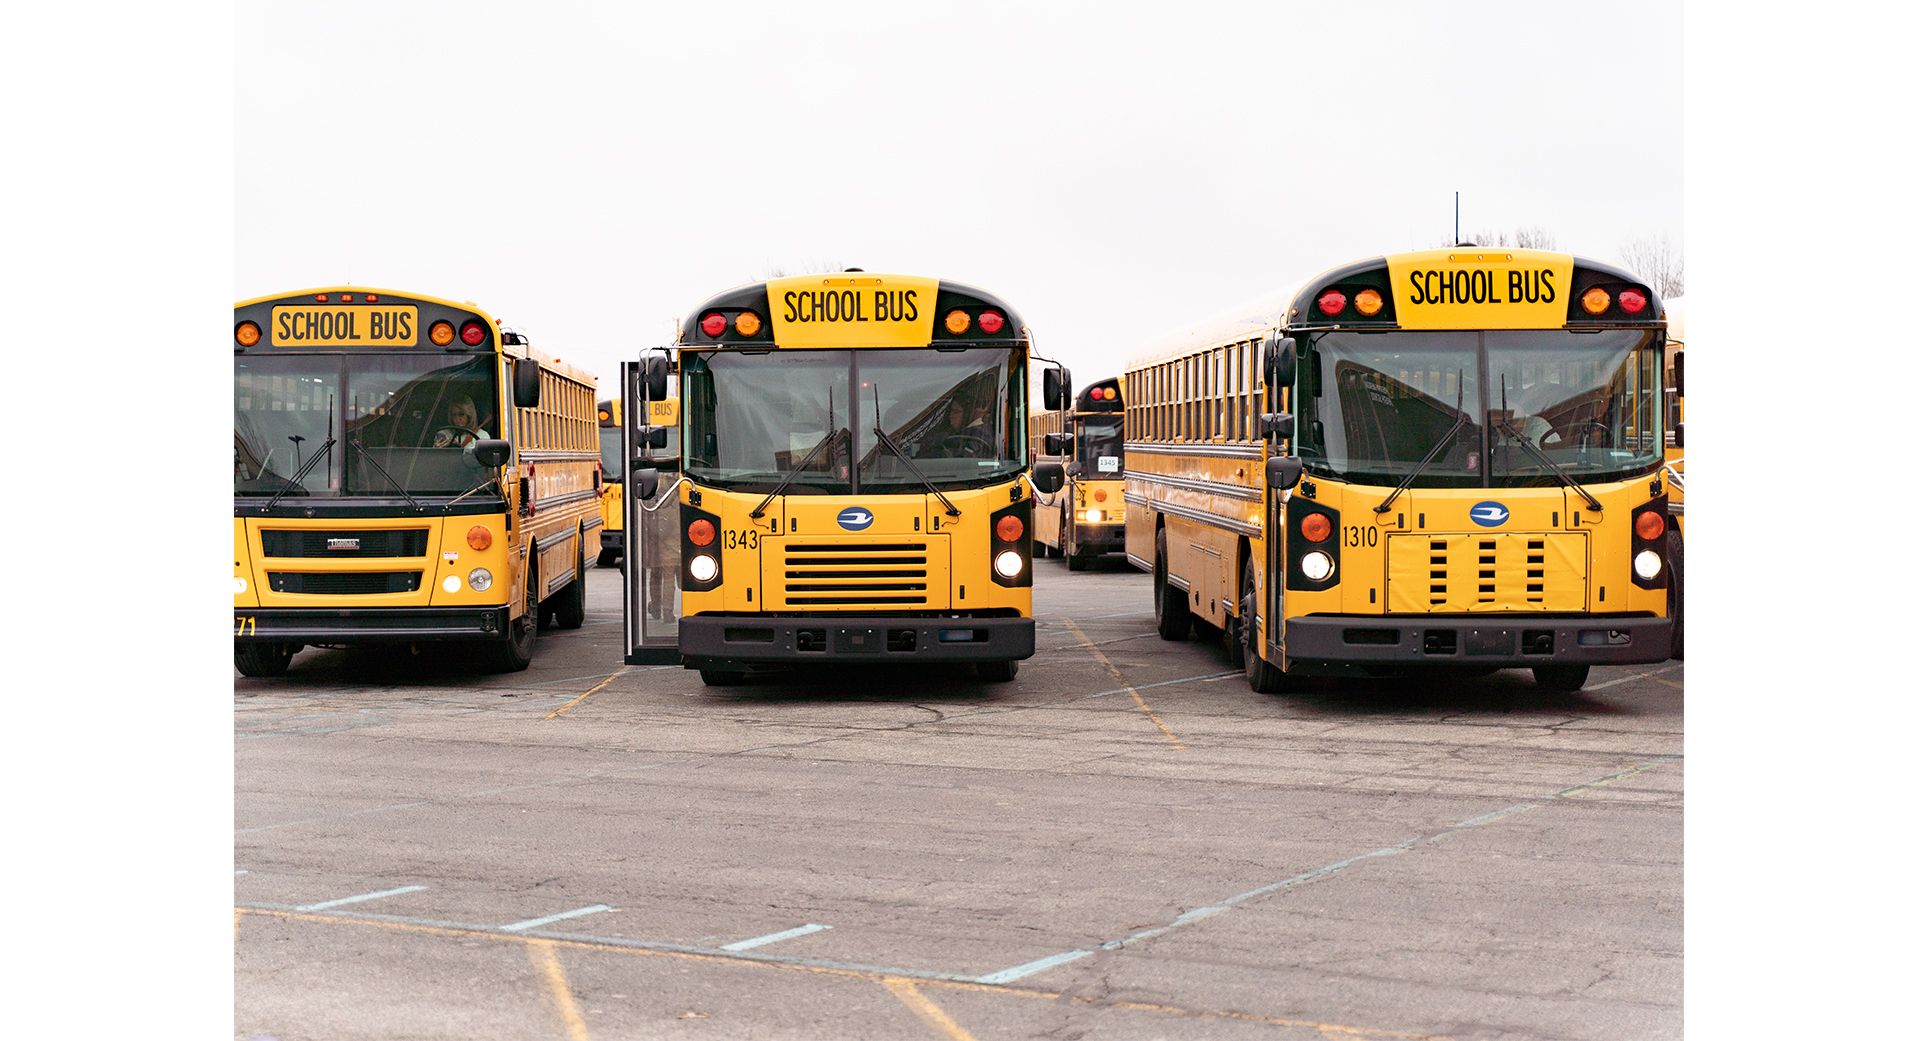  school buses